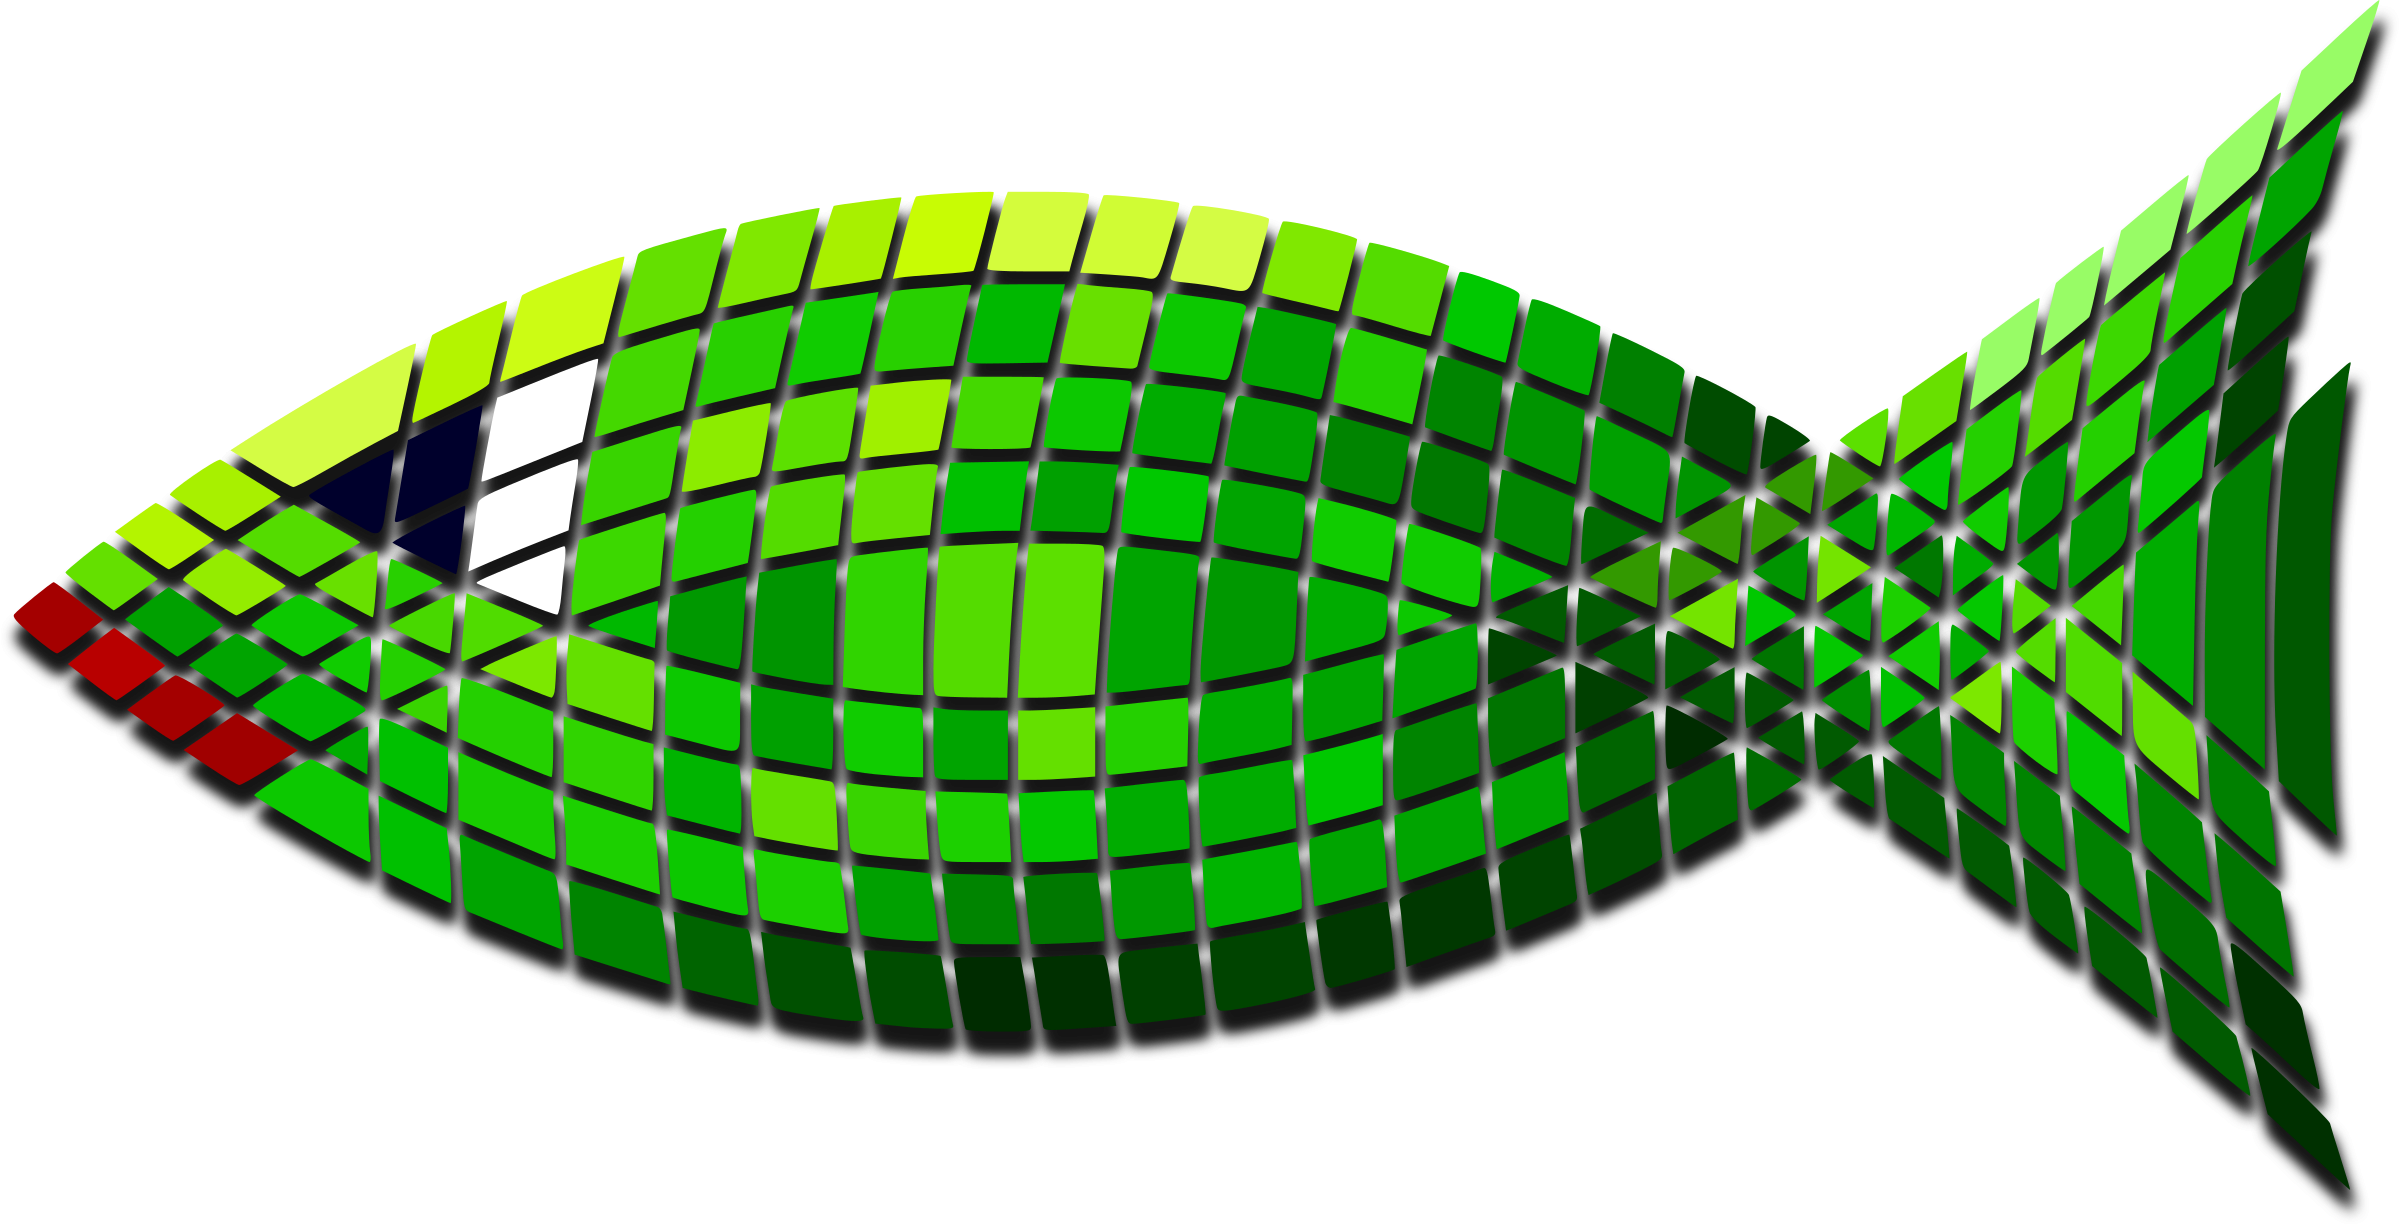 Big Image - Green Fish (2400x1227)